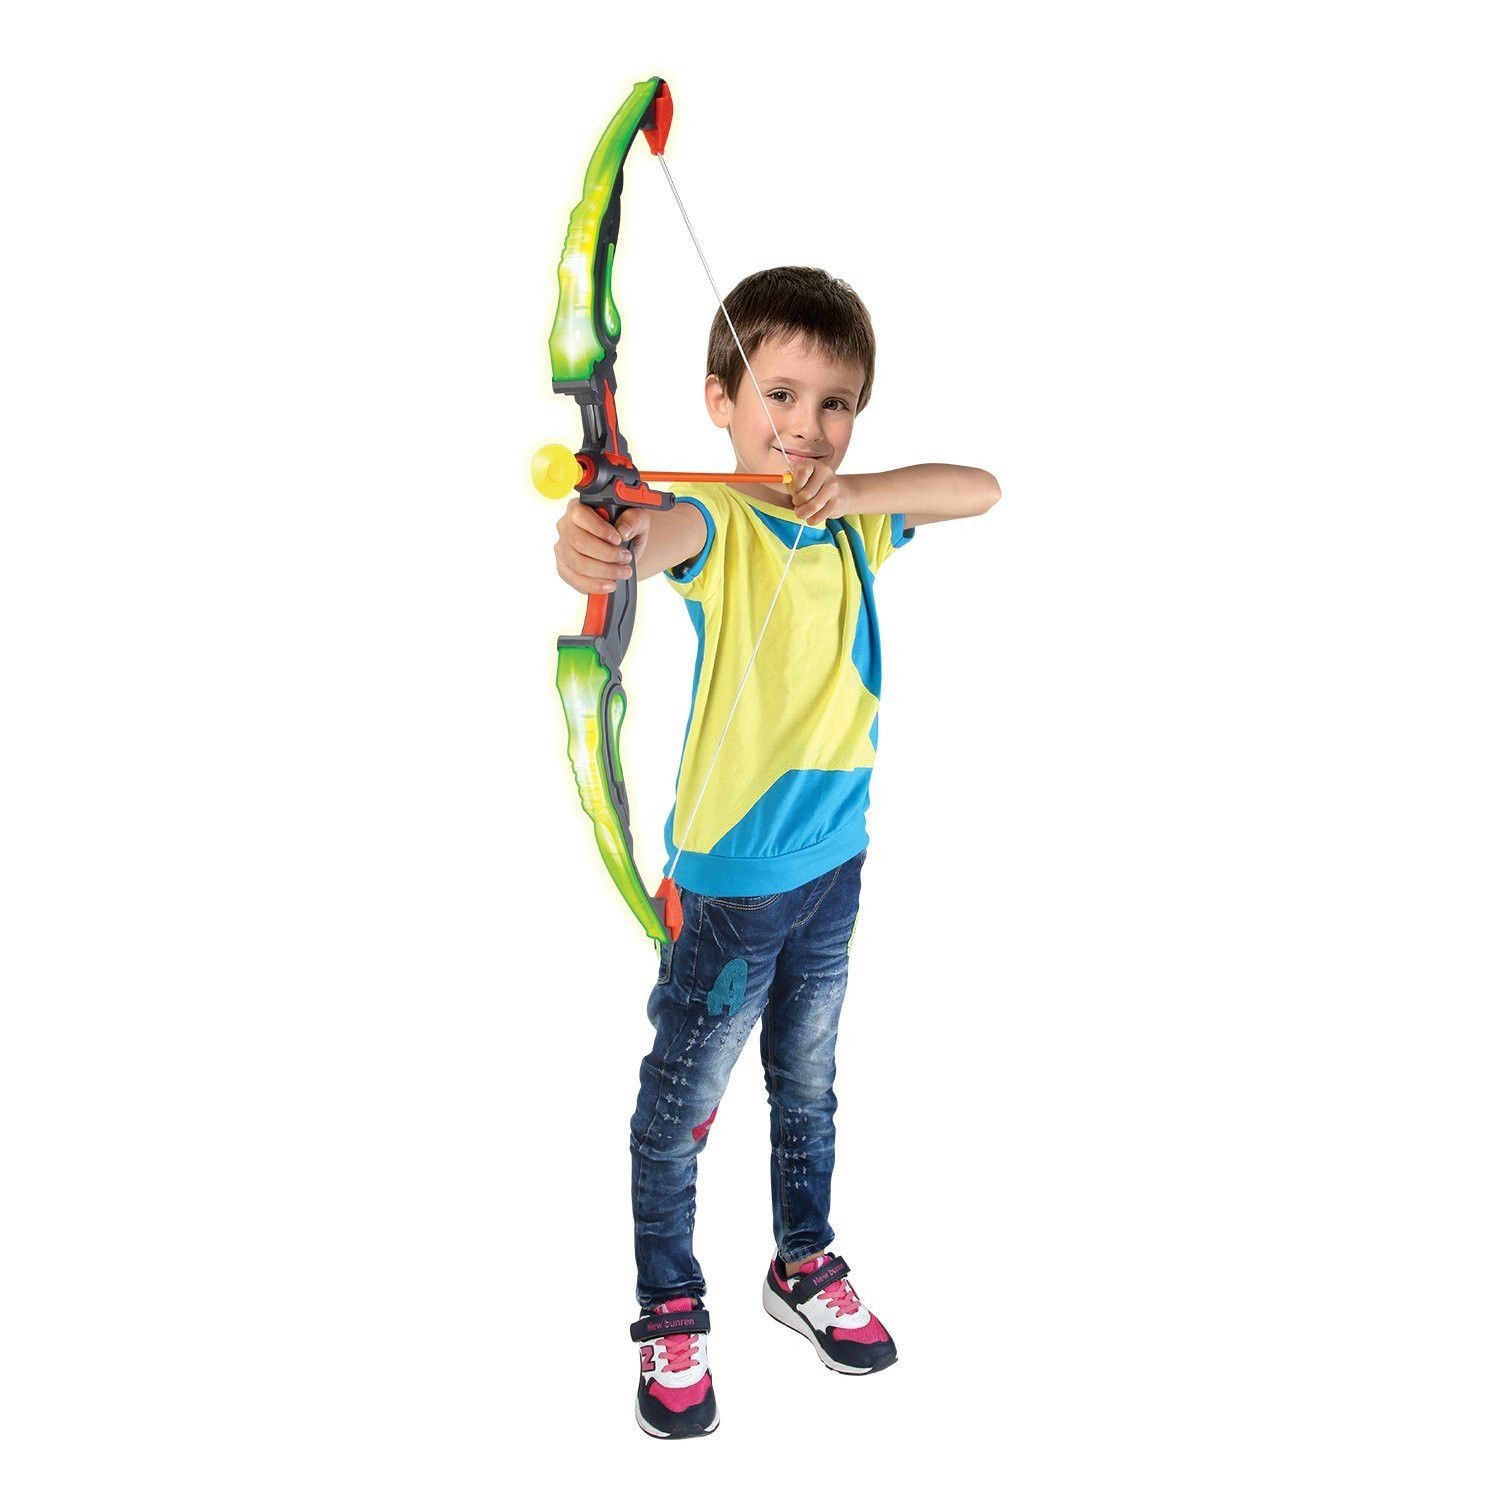 Arc de jucarie pentru copii, model arc cu sageti si tinta, multicolor